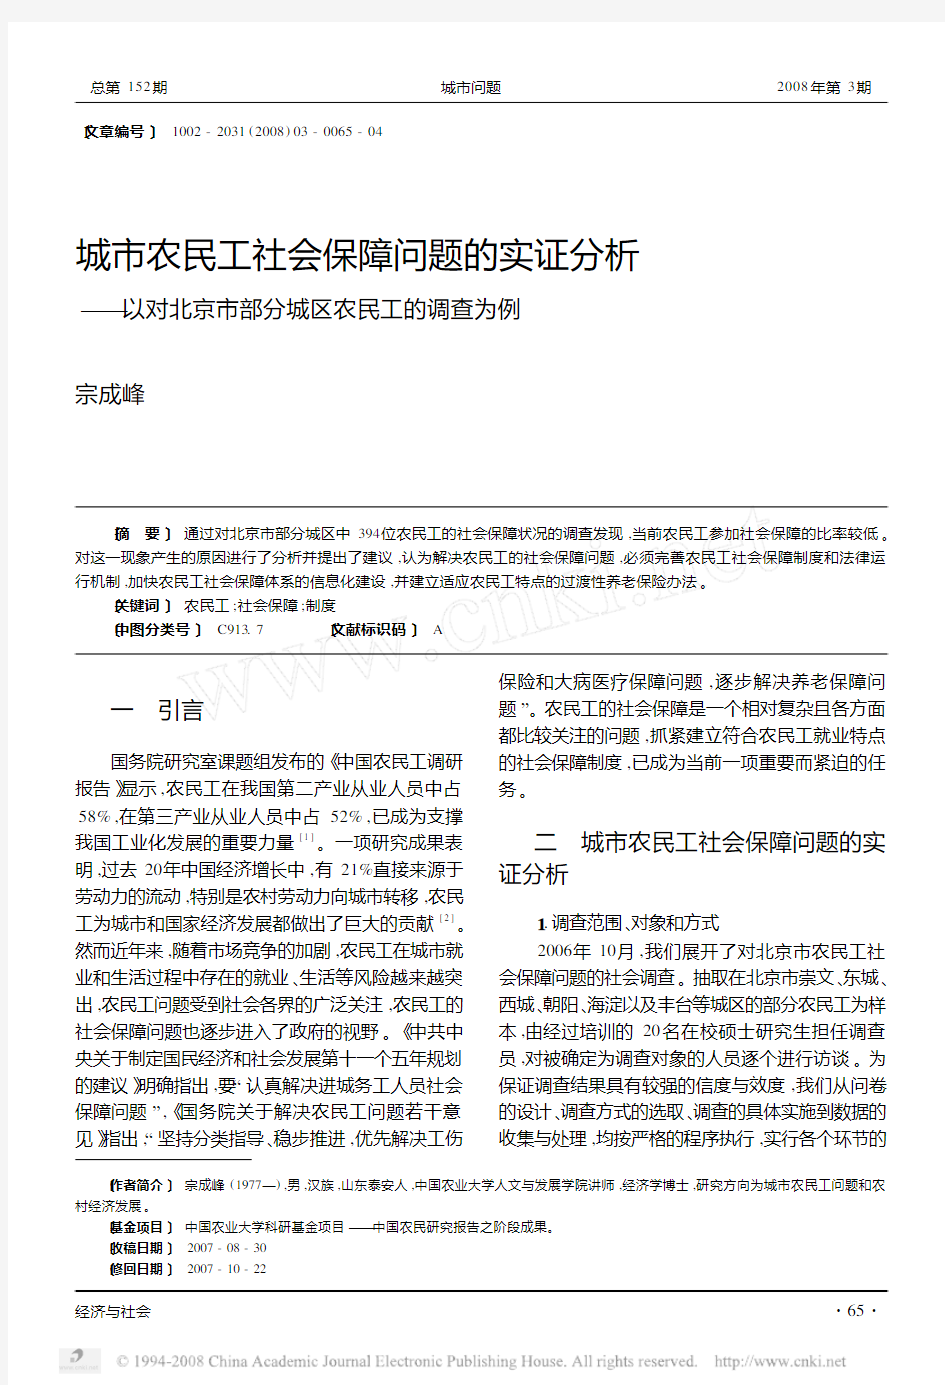 城市农民工社会保障问题的实证分析_以对北京市部分城区农民工的调查为例